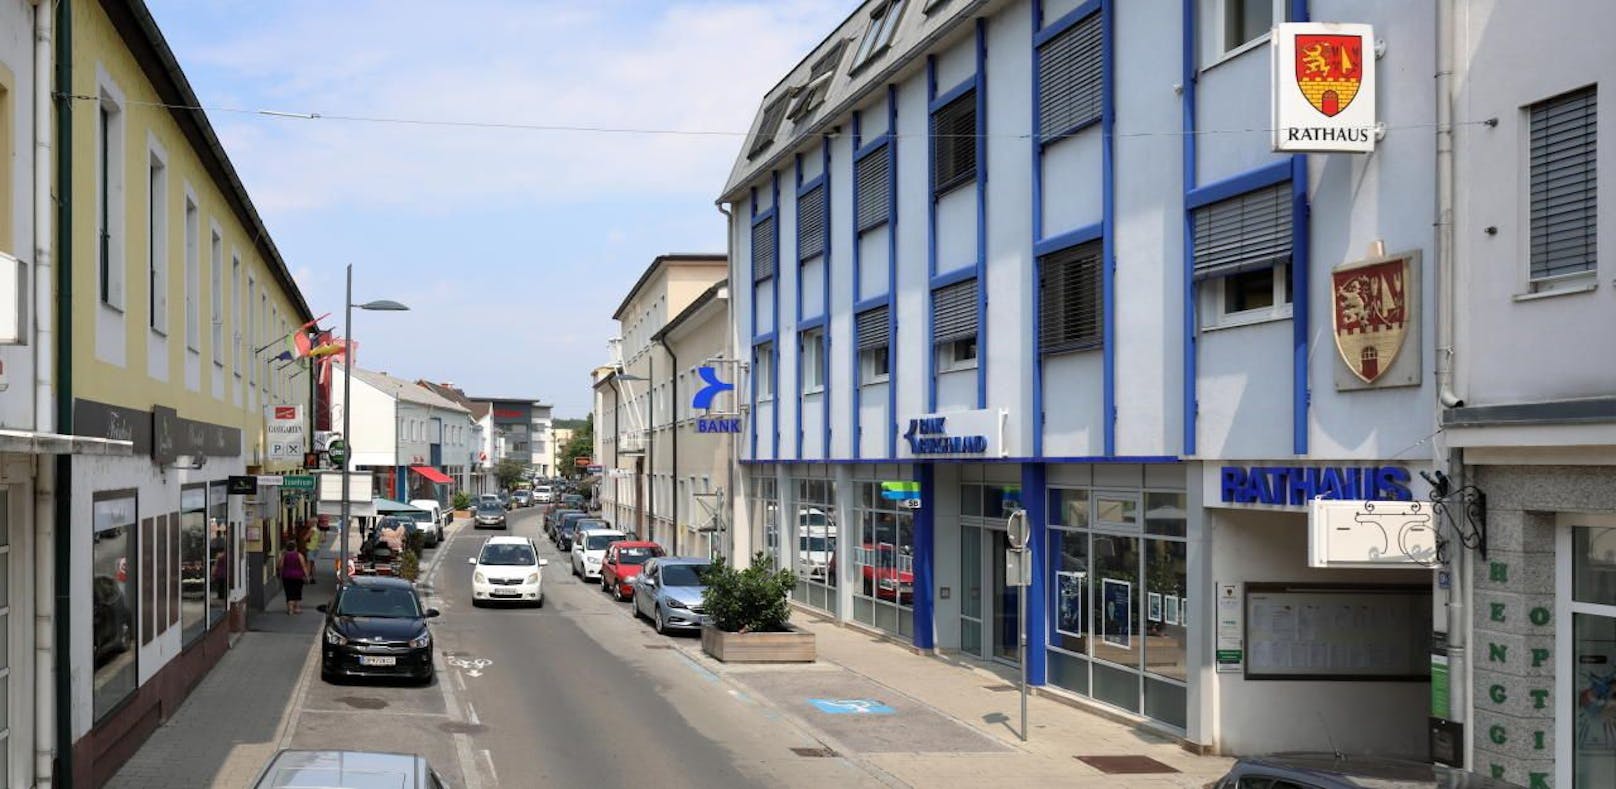 Hauptstraße von Oberpullendorf im Bereich des Rathauses und Bezirksgerichtes